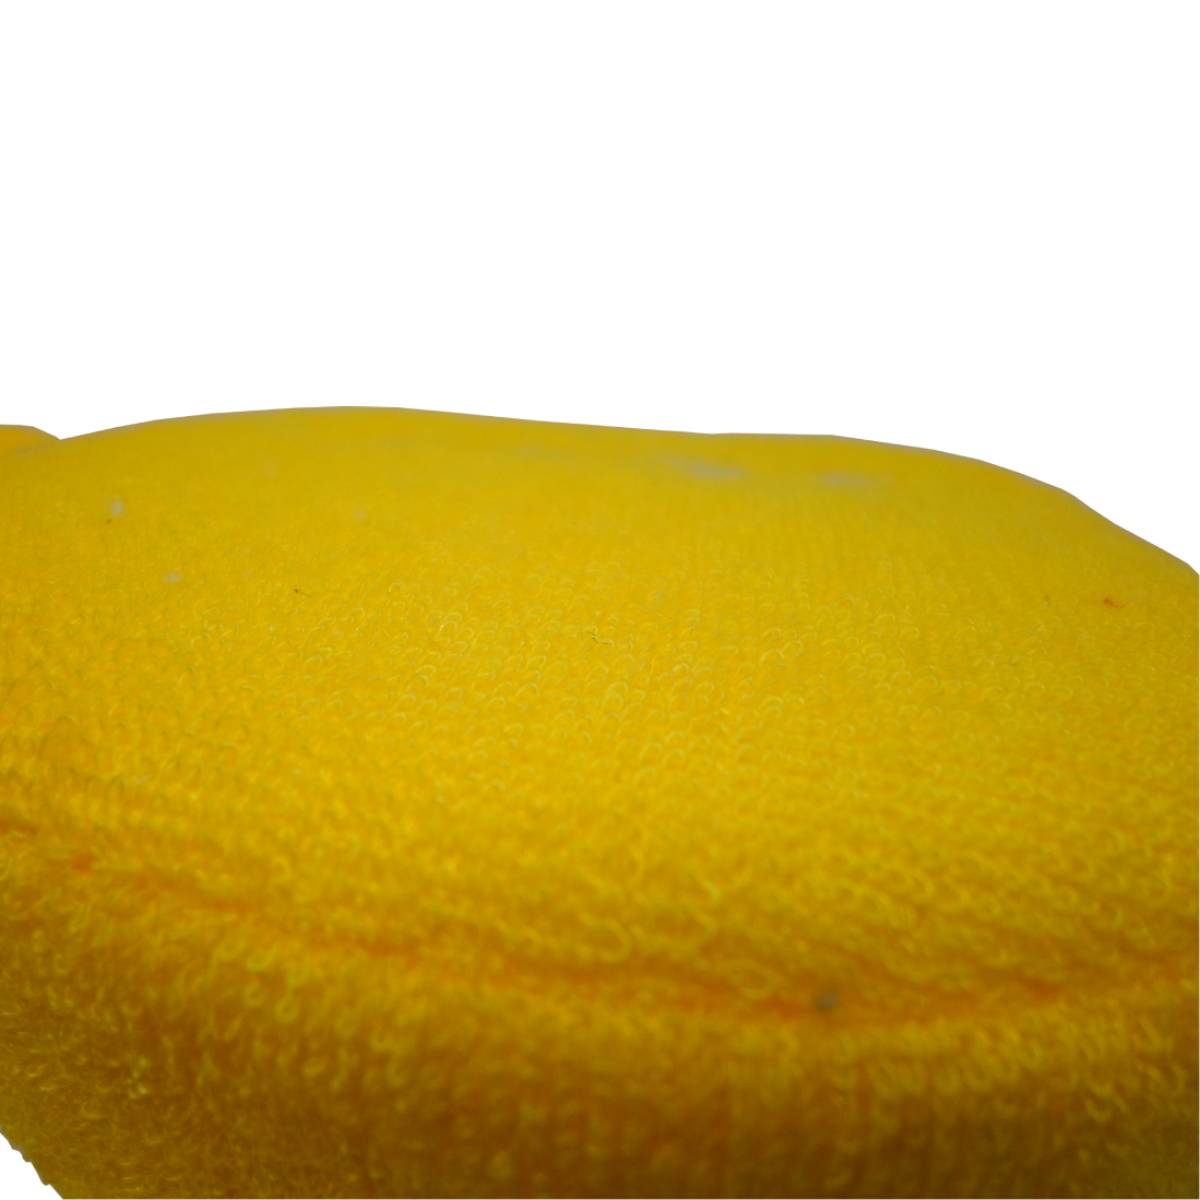 Esponja para baño en forma de limon 6 piezas